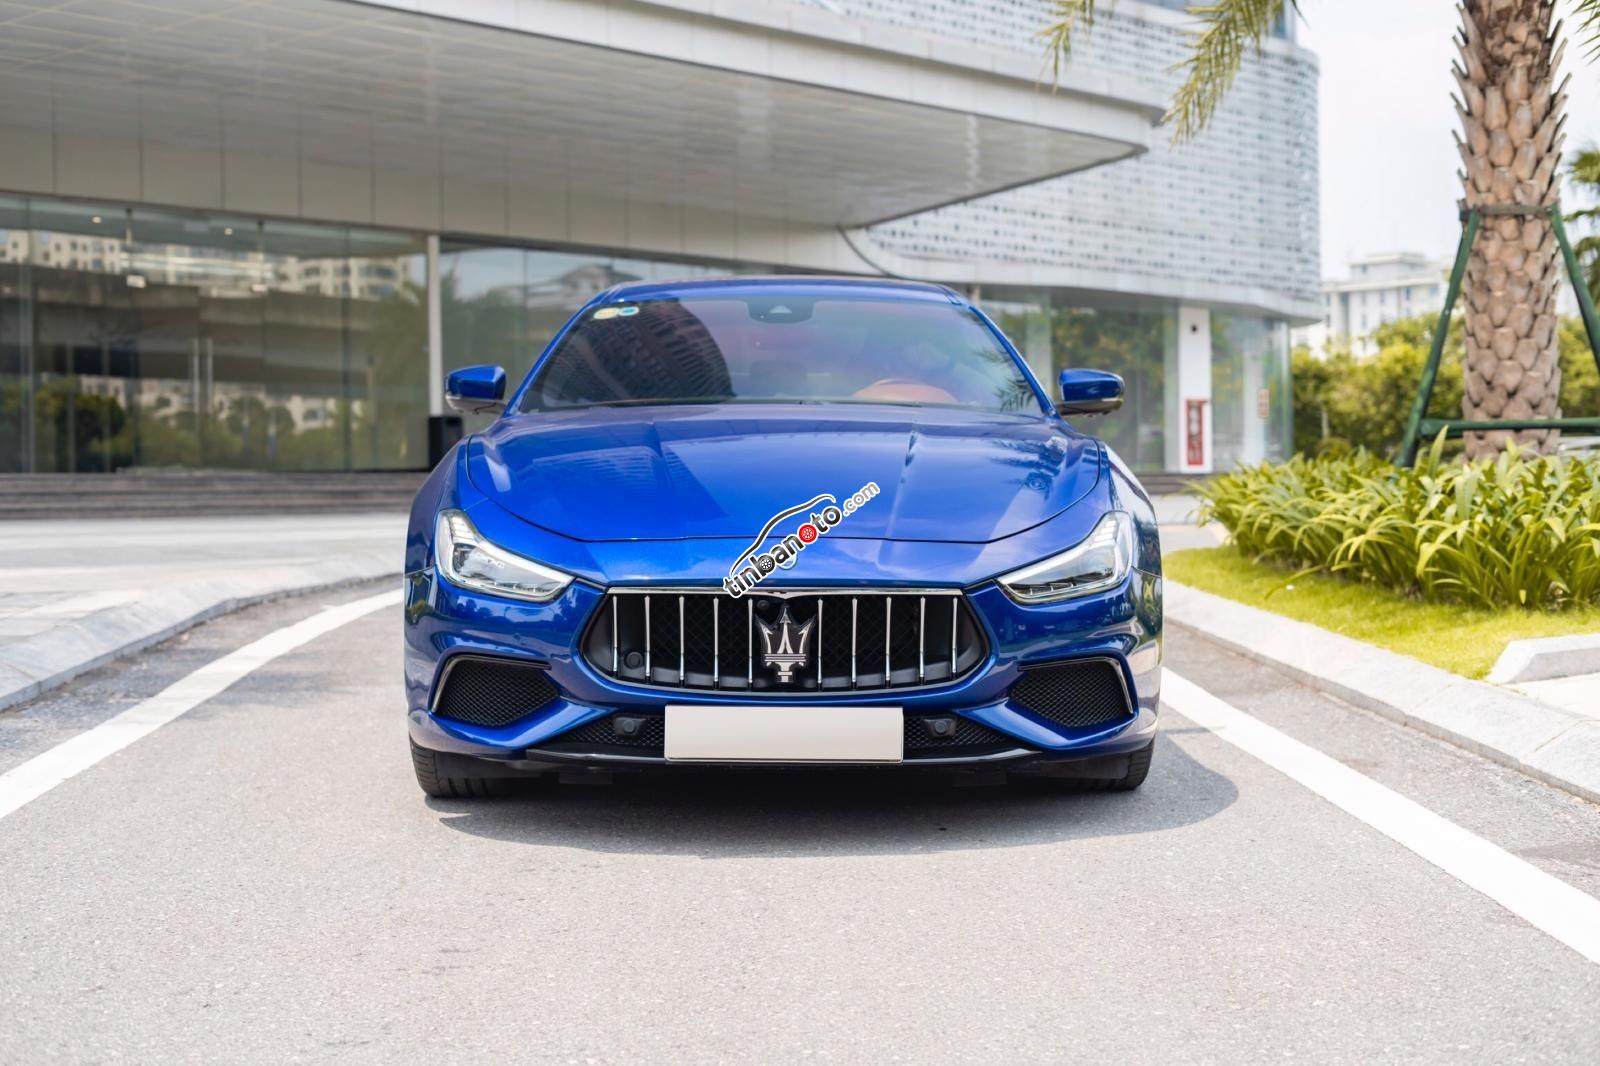 ban oto Nhap khau Maserati   2018